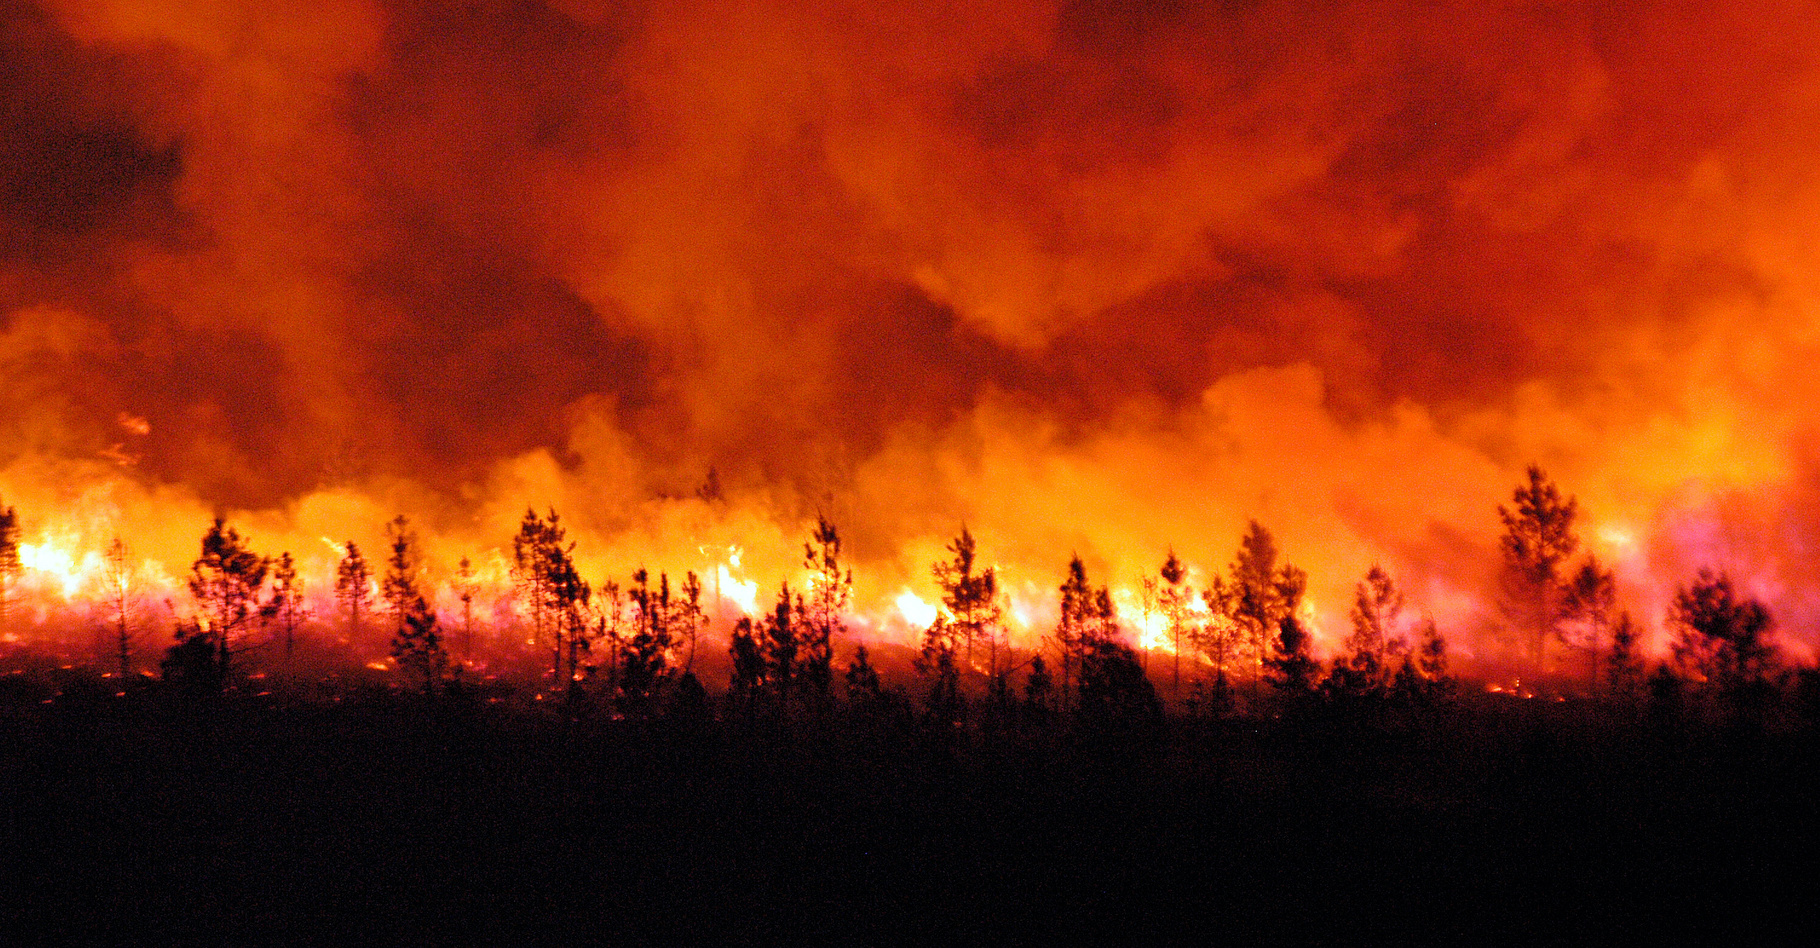 Les modèles climatiques prévoient une augmentation de la fréquence et de l’intensité des feux de forêt. Les observations le confirment. © synto, Adobe Stock